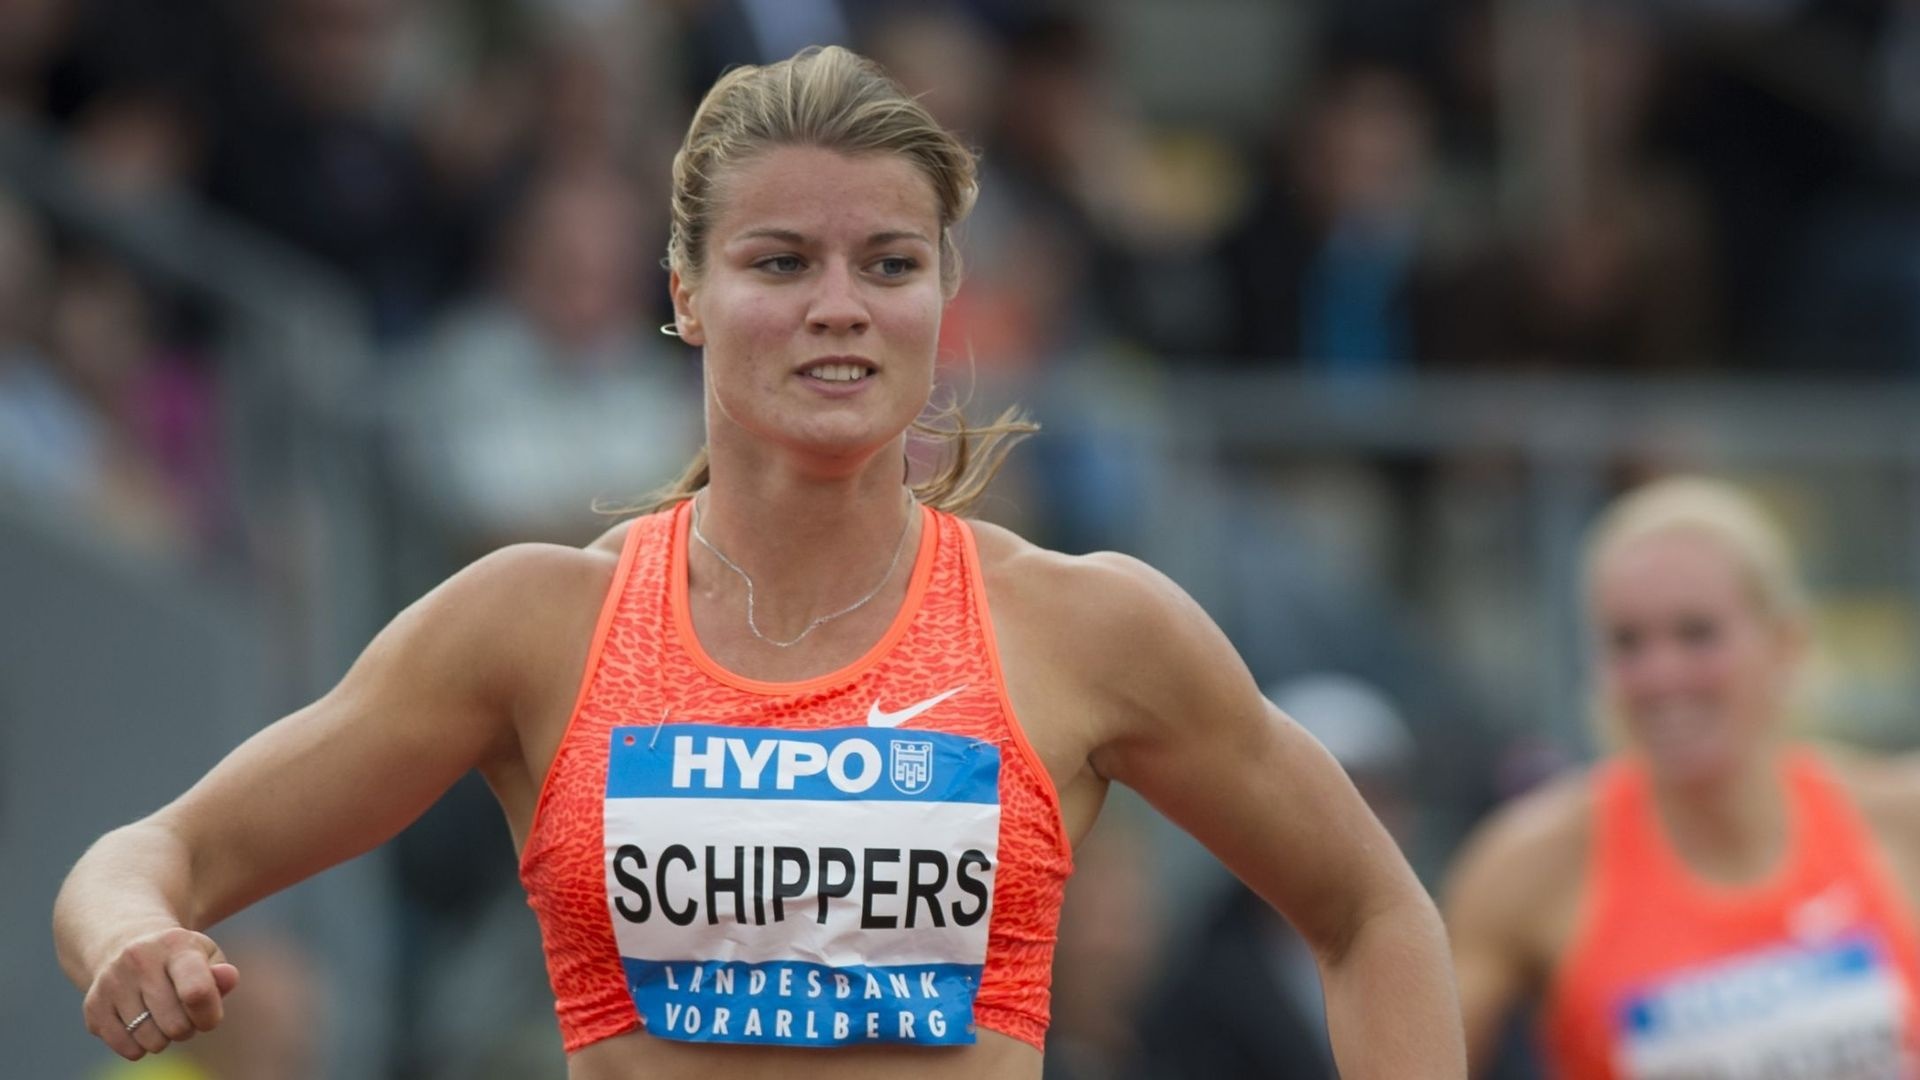 Dafne Schippers, Sprint sensation, Dutch sprinter, Speedy athlete, 1920x1080 Full HD Desktop